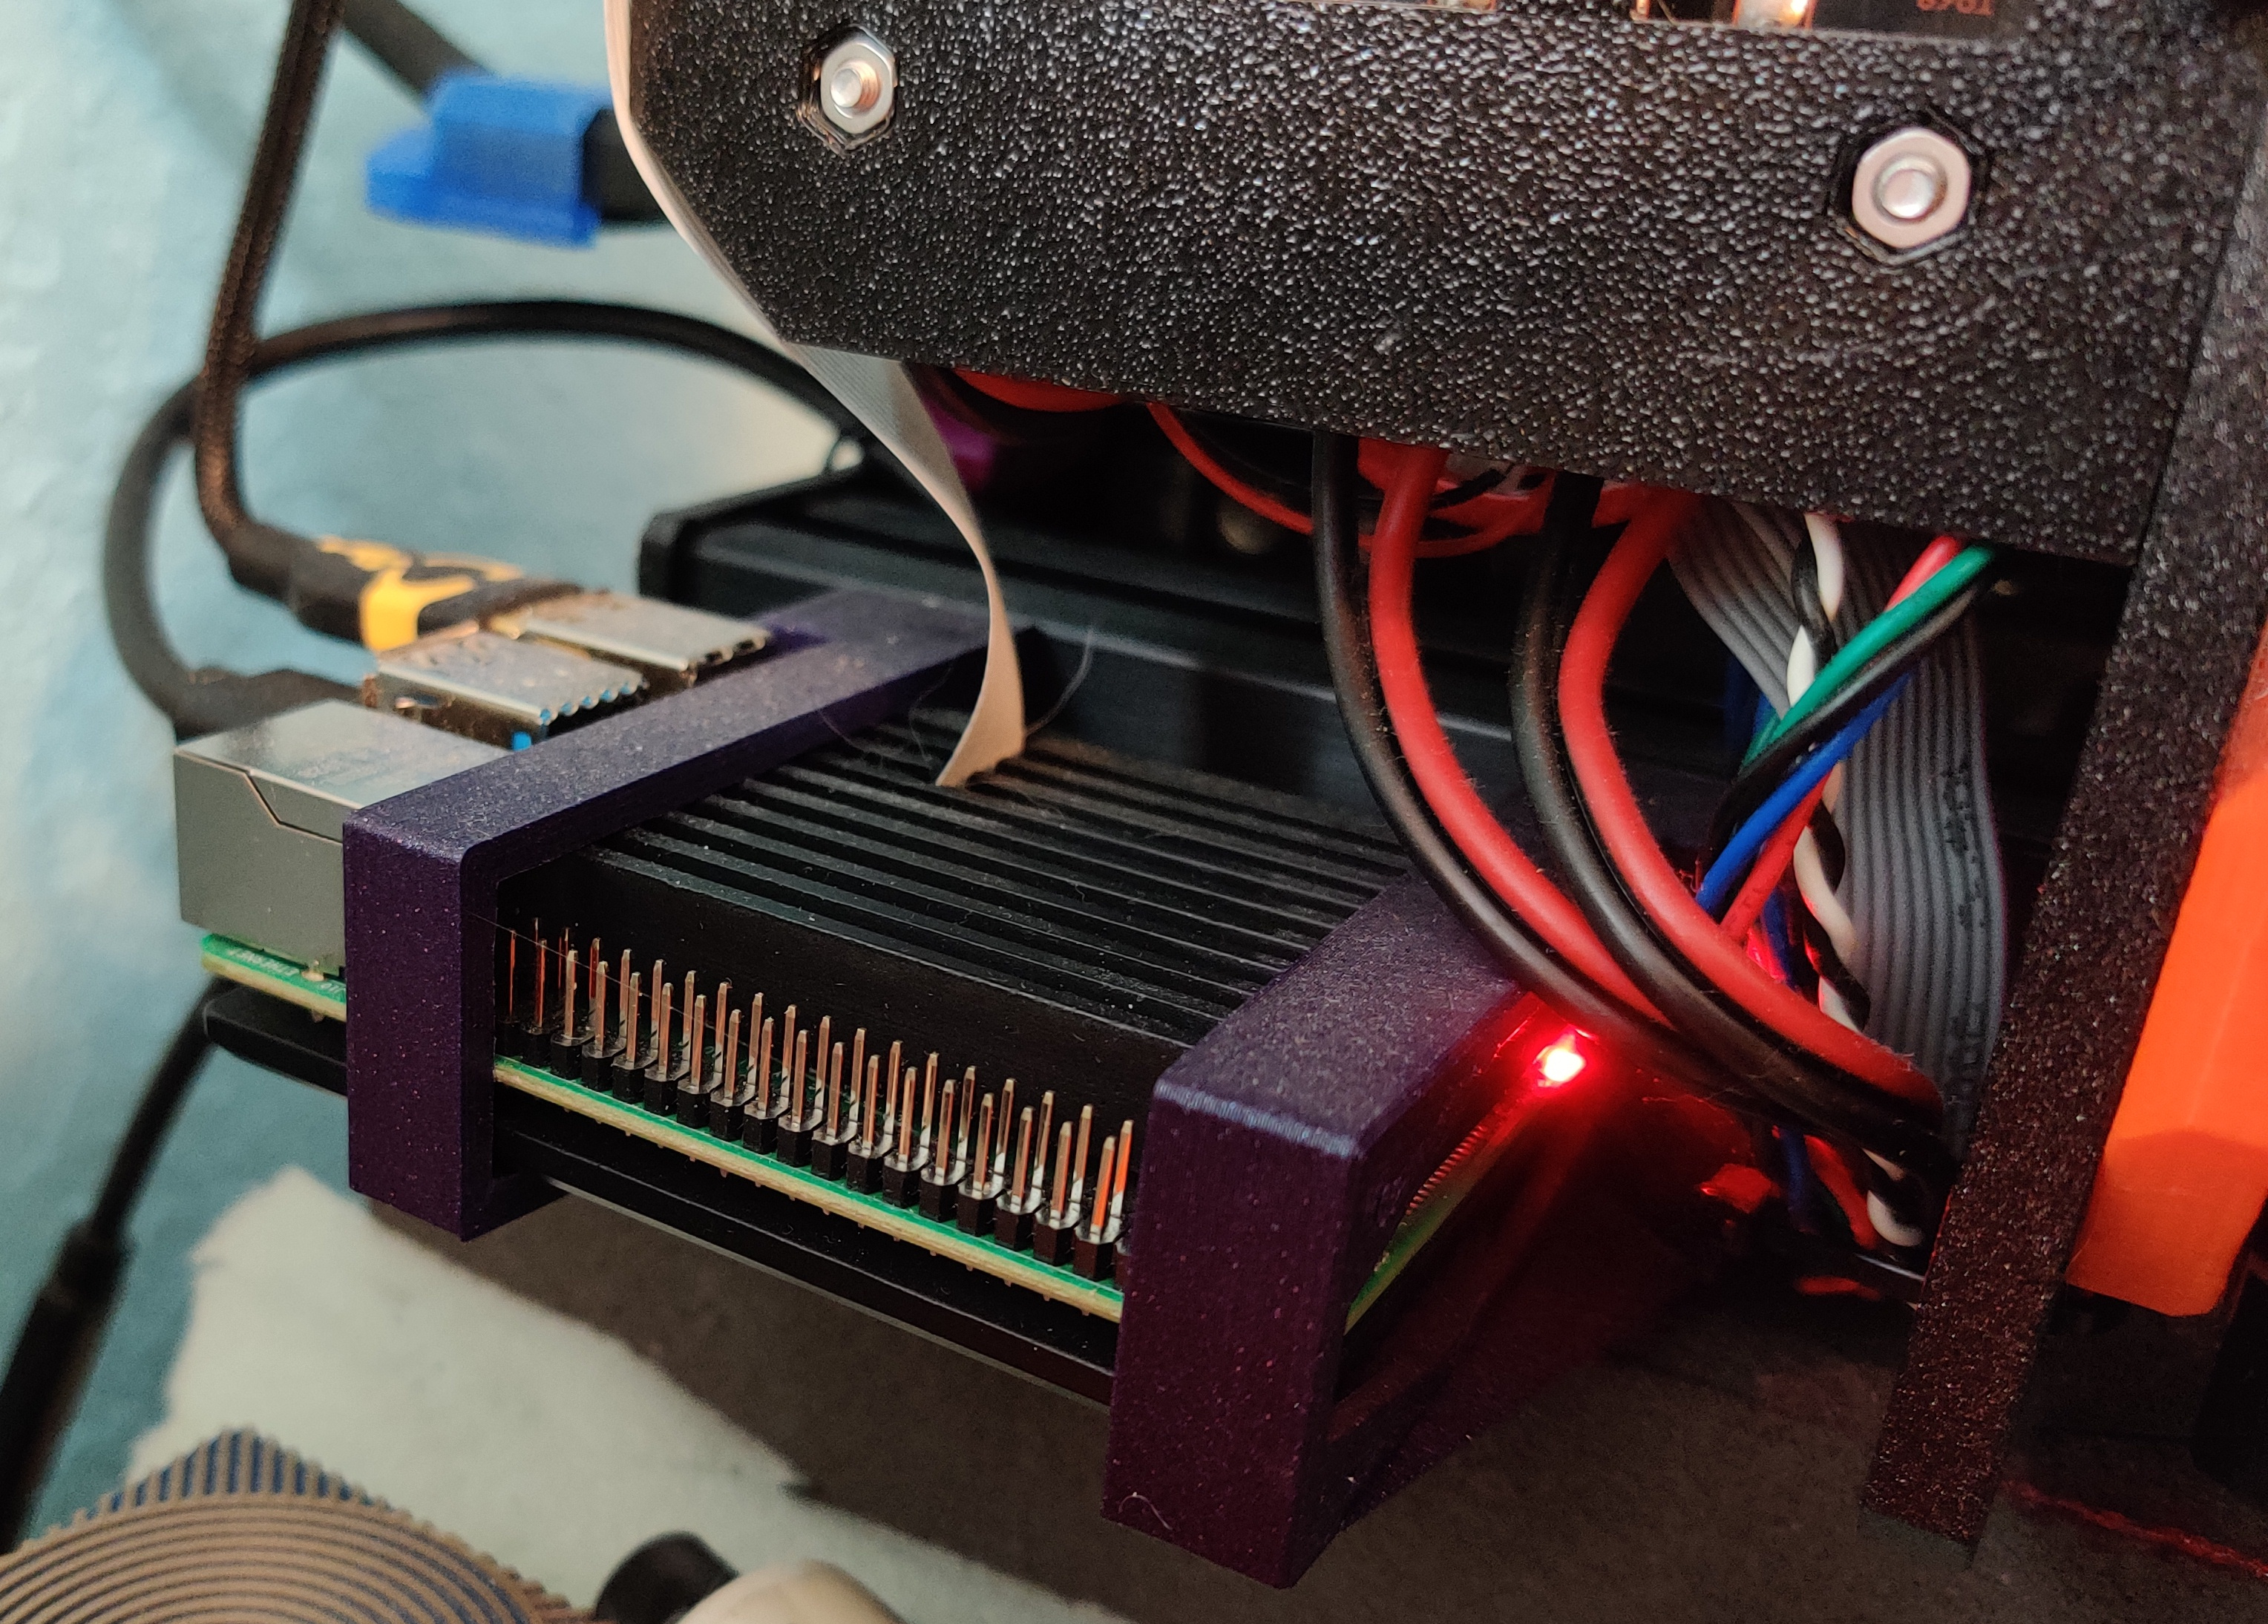 3D printer mounting bracket for Raspberry Pi in aluminum case